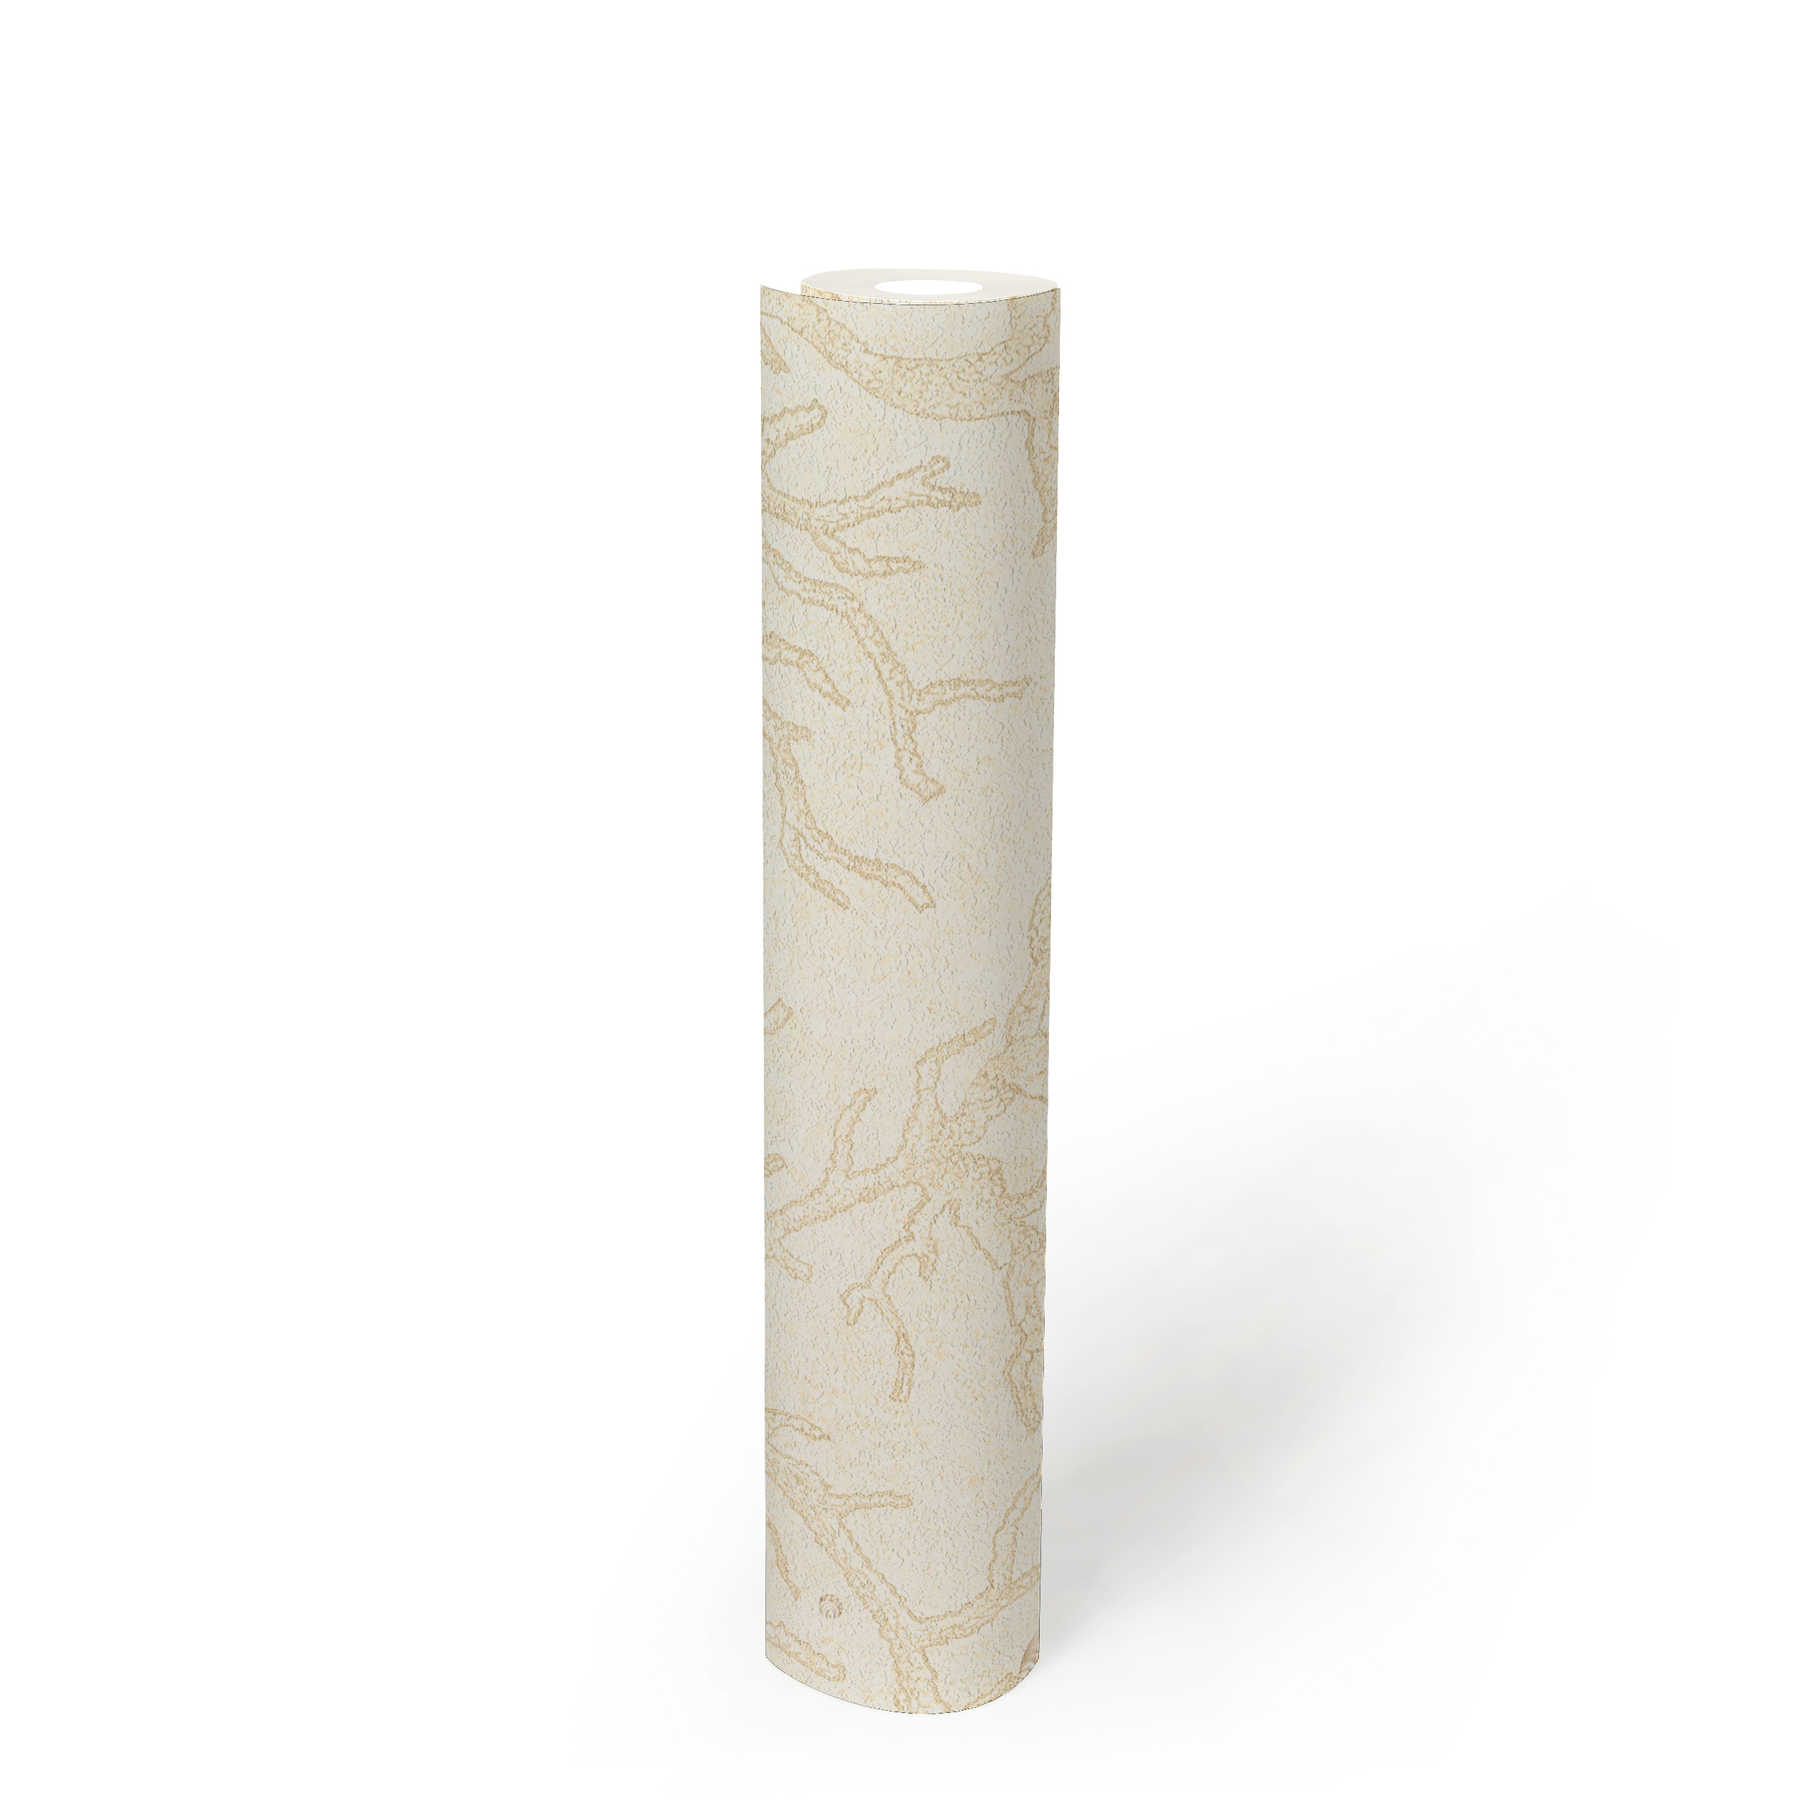             VERSACE behangpapier met koraalmotief - crème, metallic
        